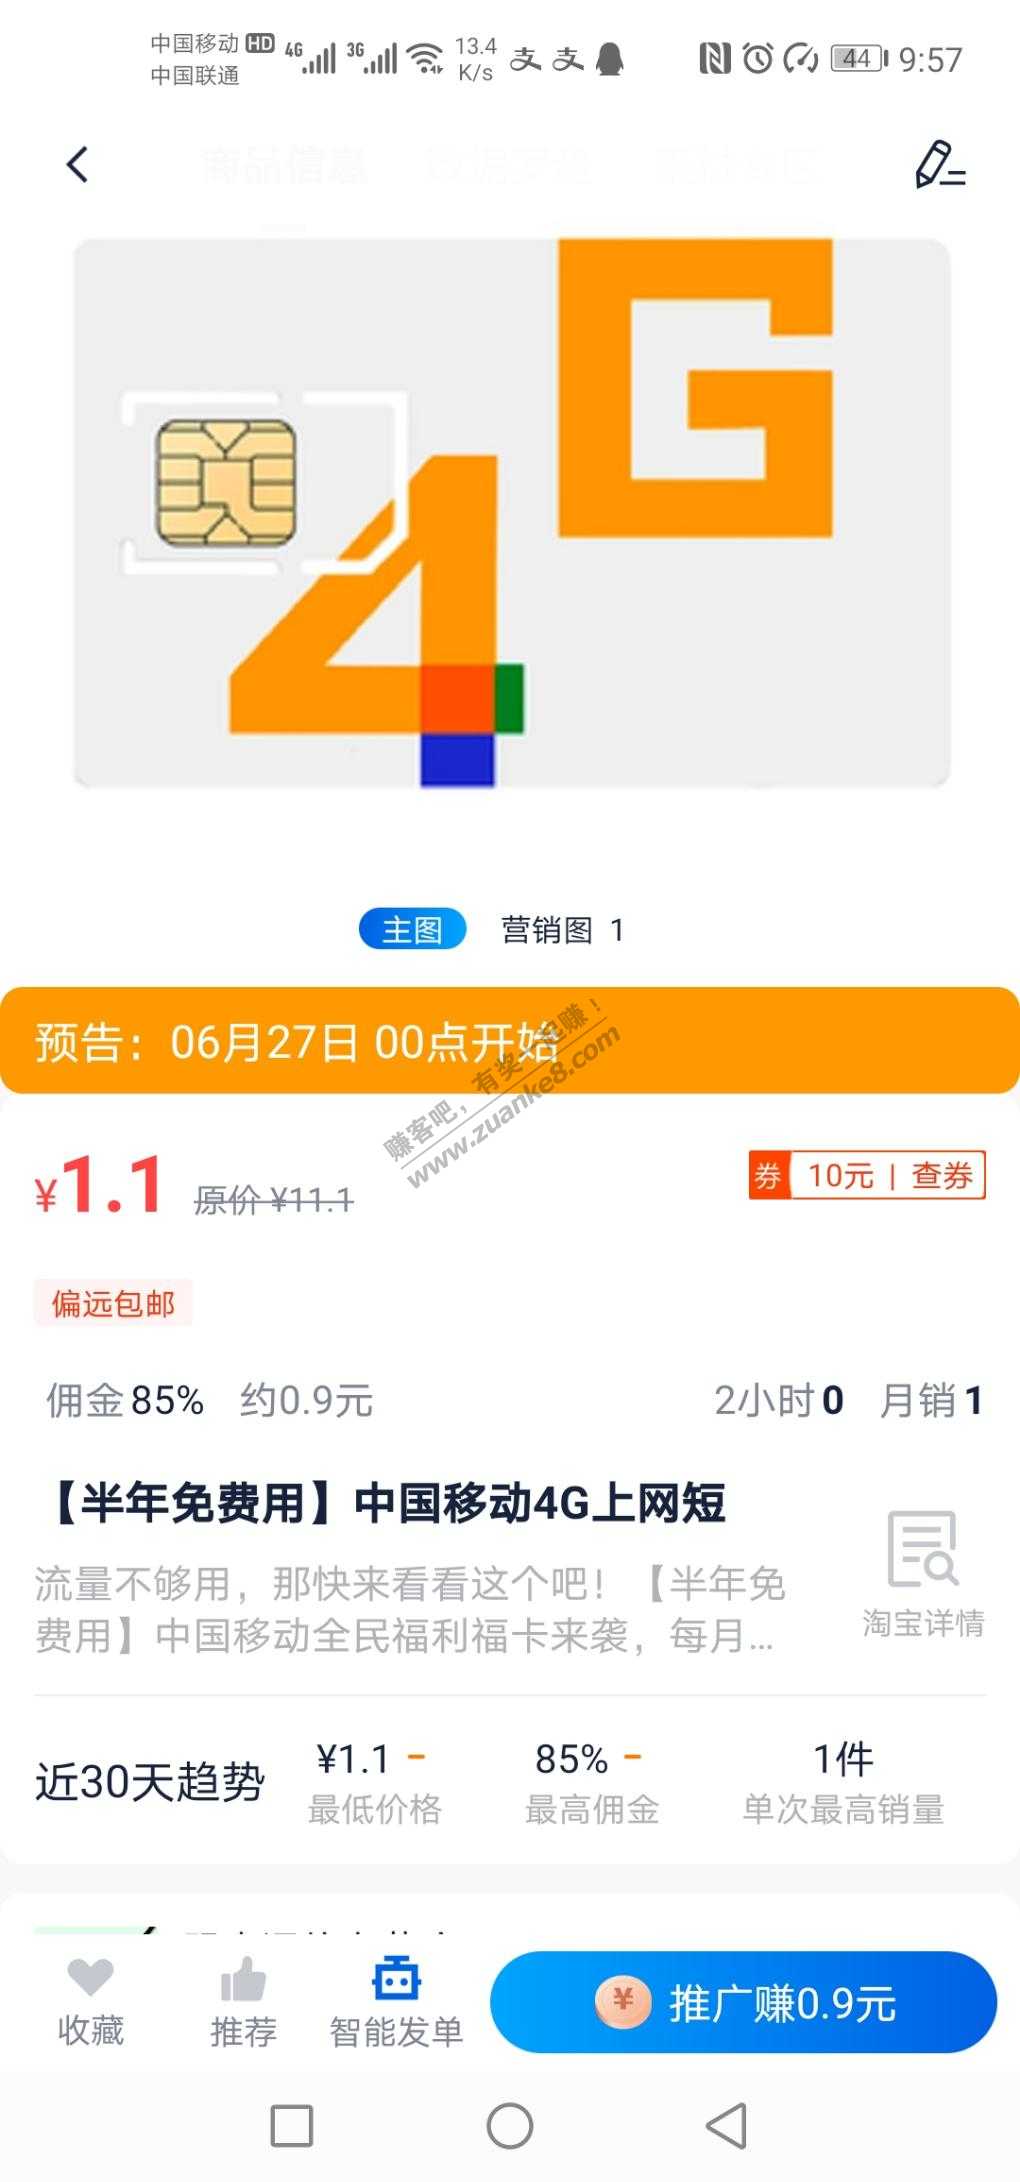 预告:1.1移动卡用半年-惠小助(52huixz.com)